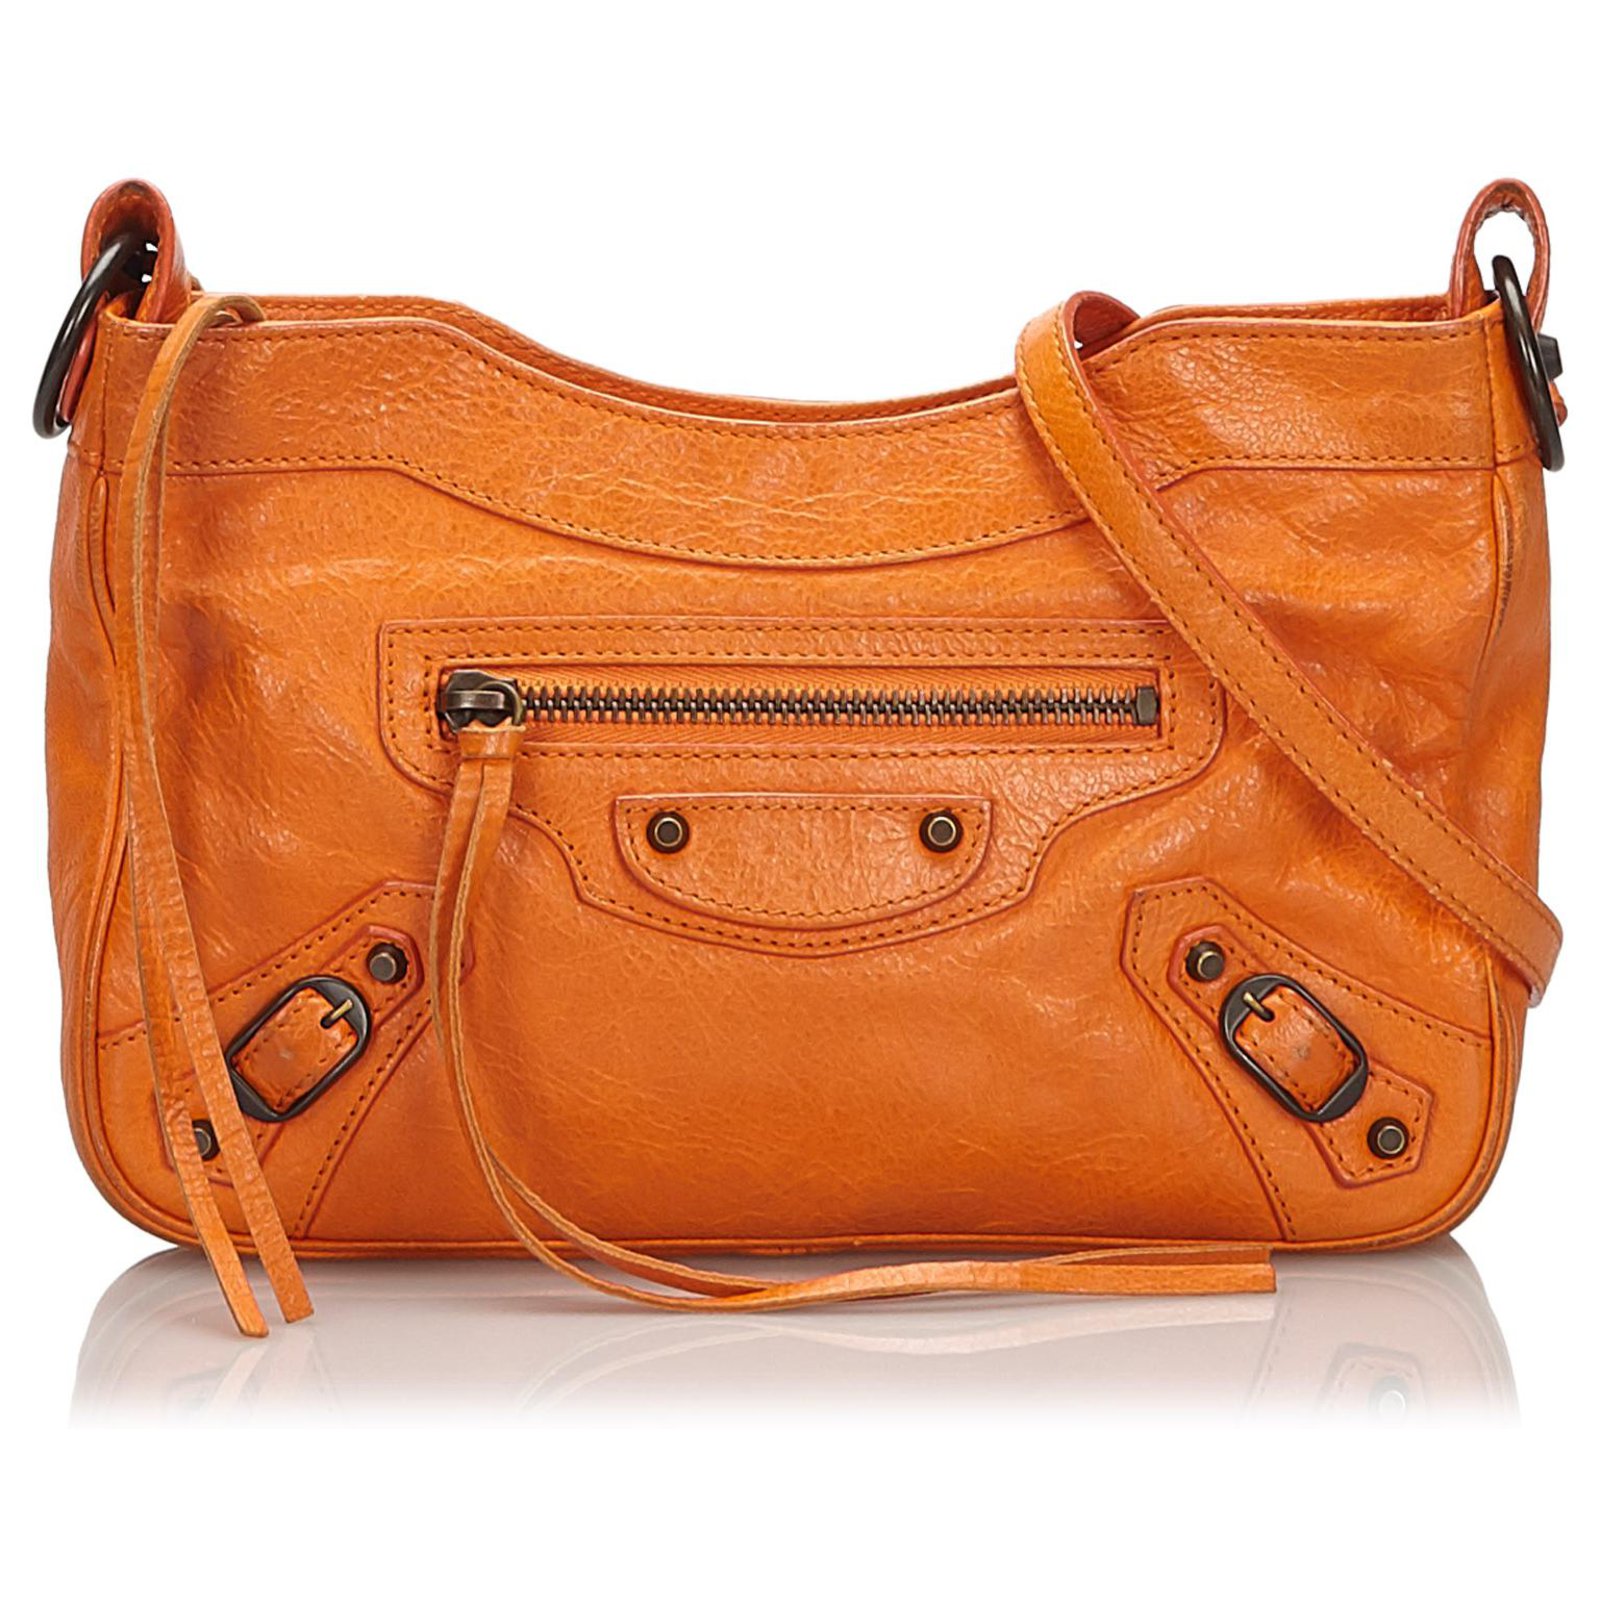 balenciaga handbags orange